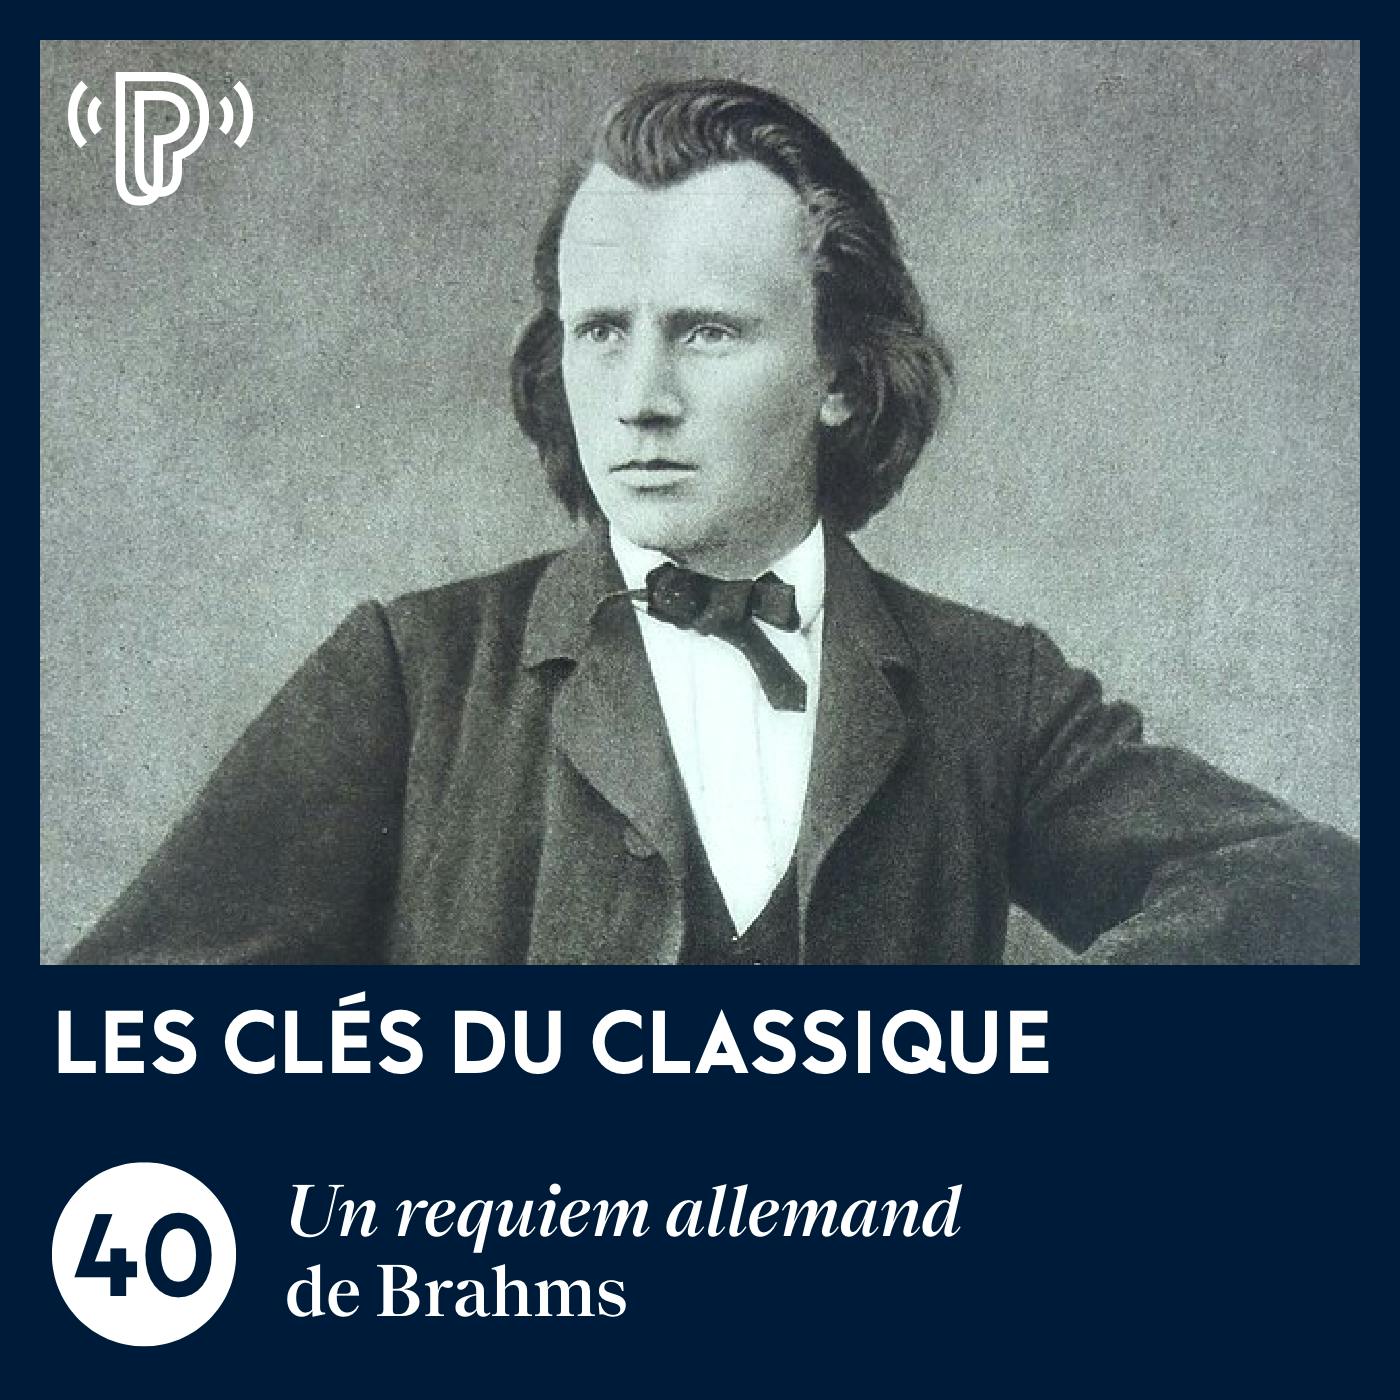 Un requiem allemand de Brahms | Les Clés du classique #40